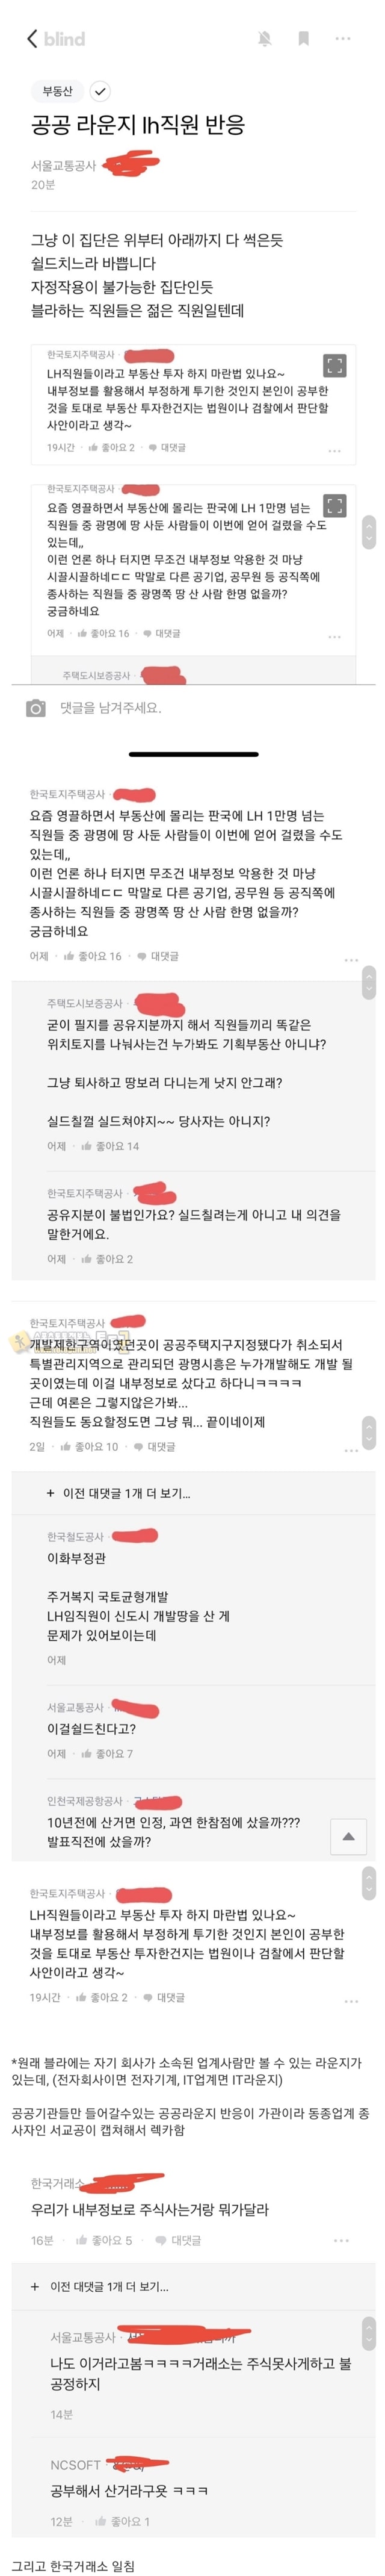 먹튀검증 토토군 유머 블라인드 LH 직원들 반응